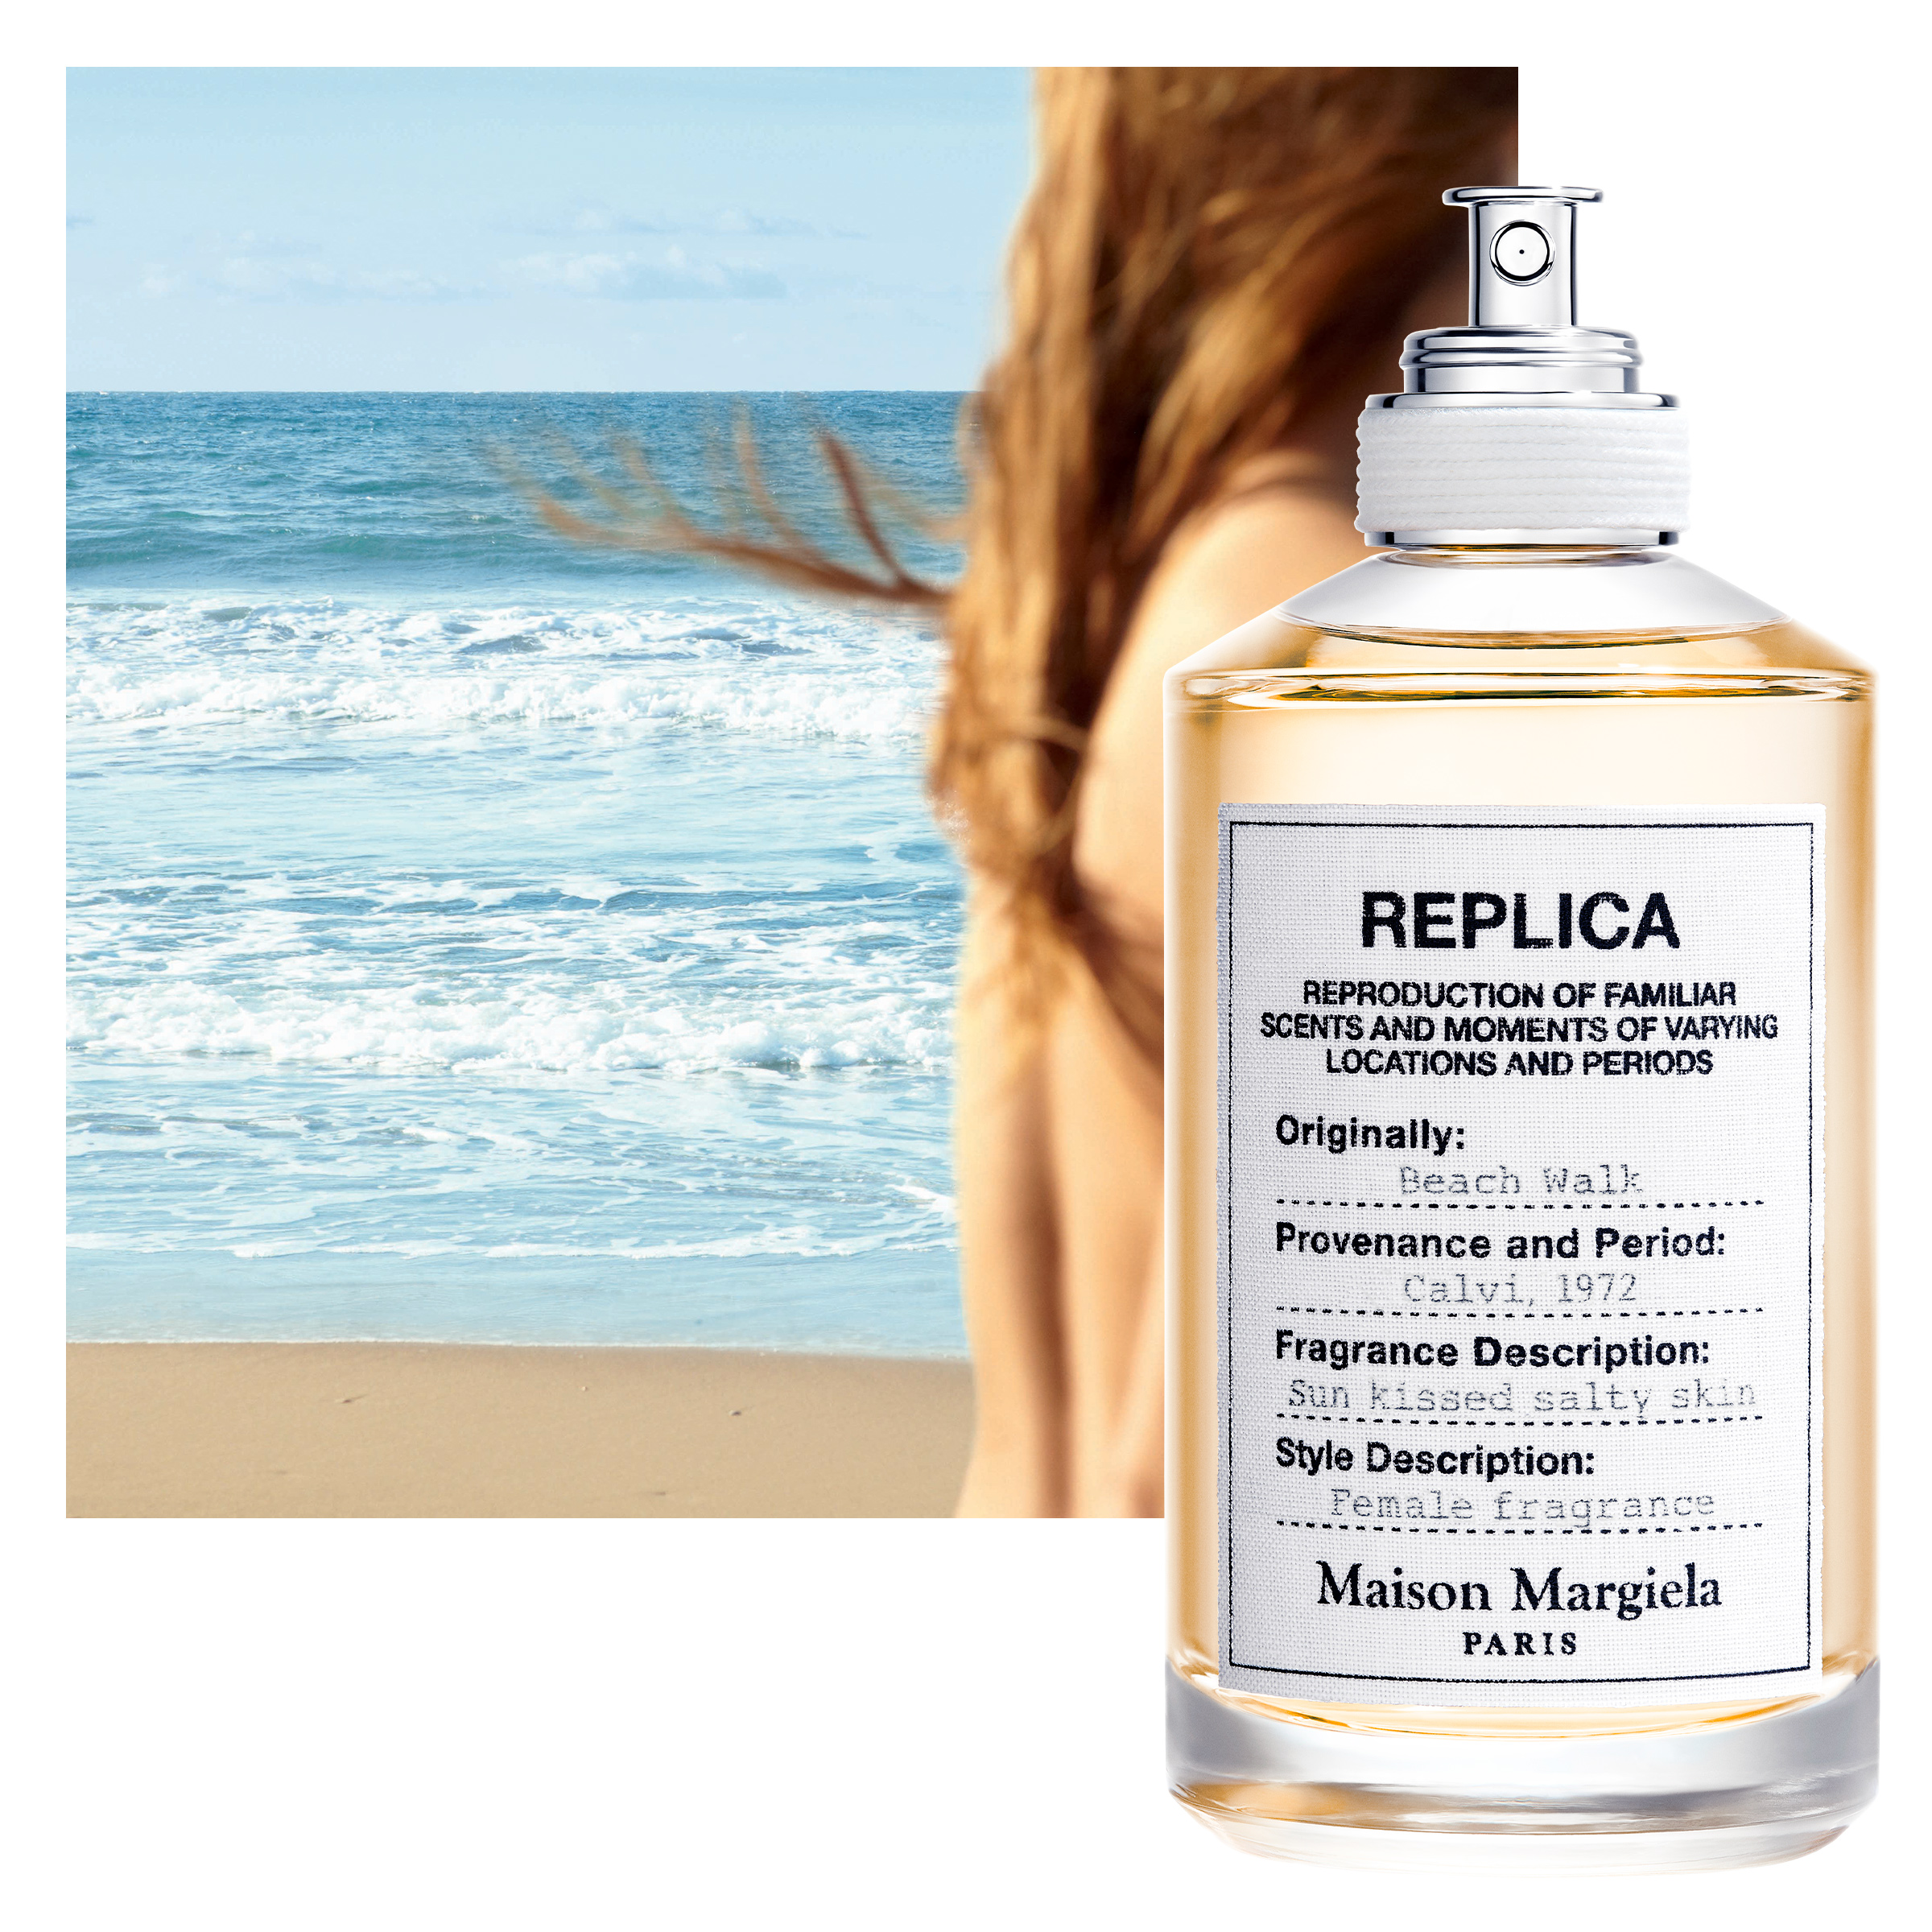 replica beach walk eau de parfum